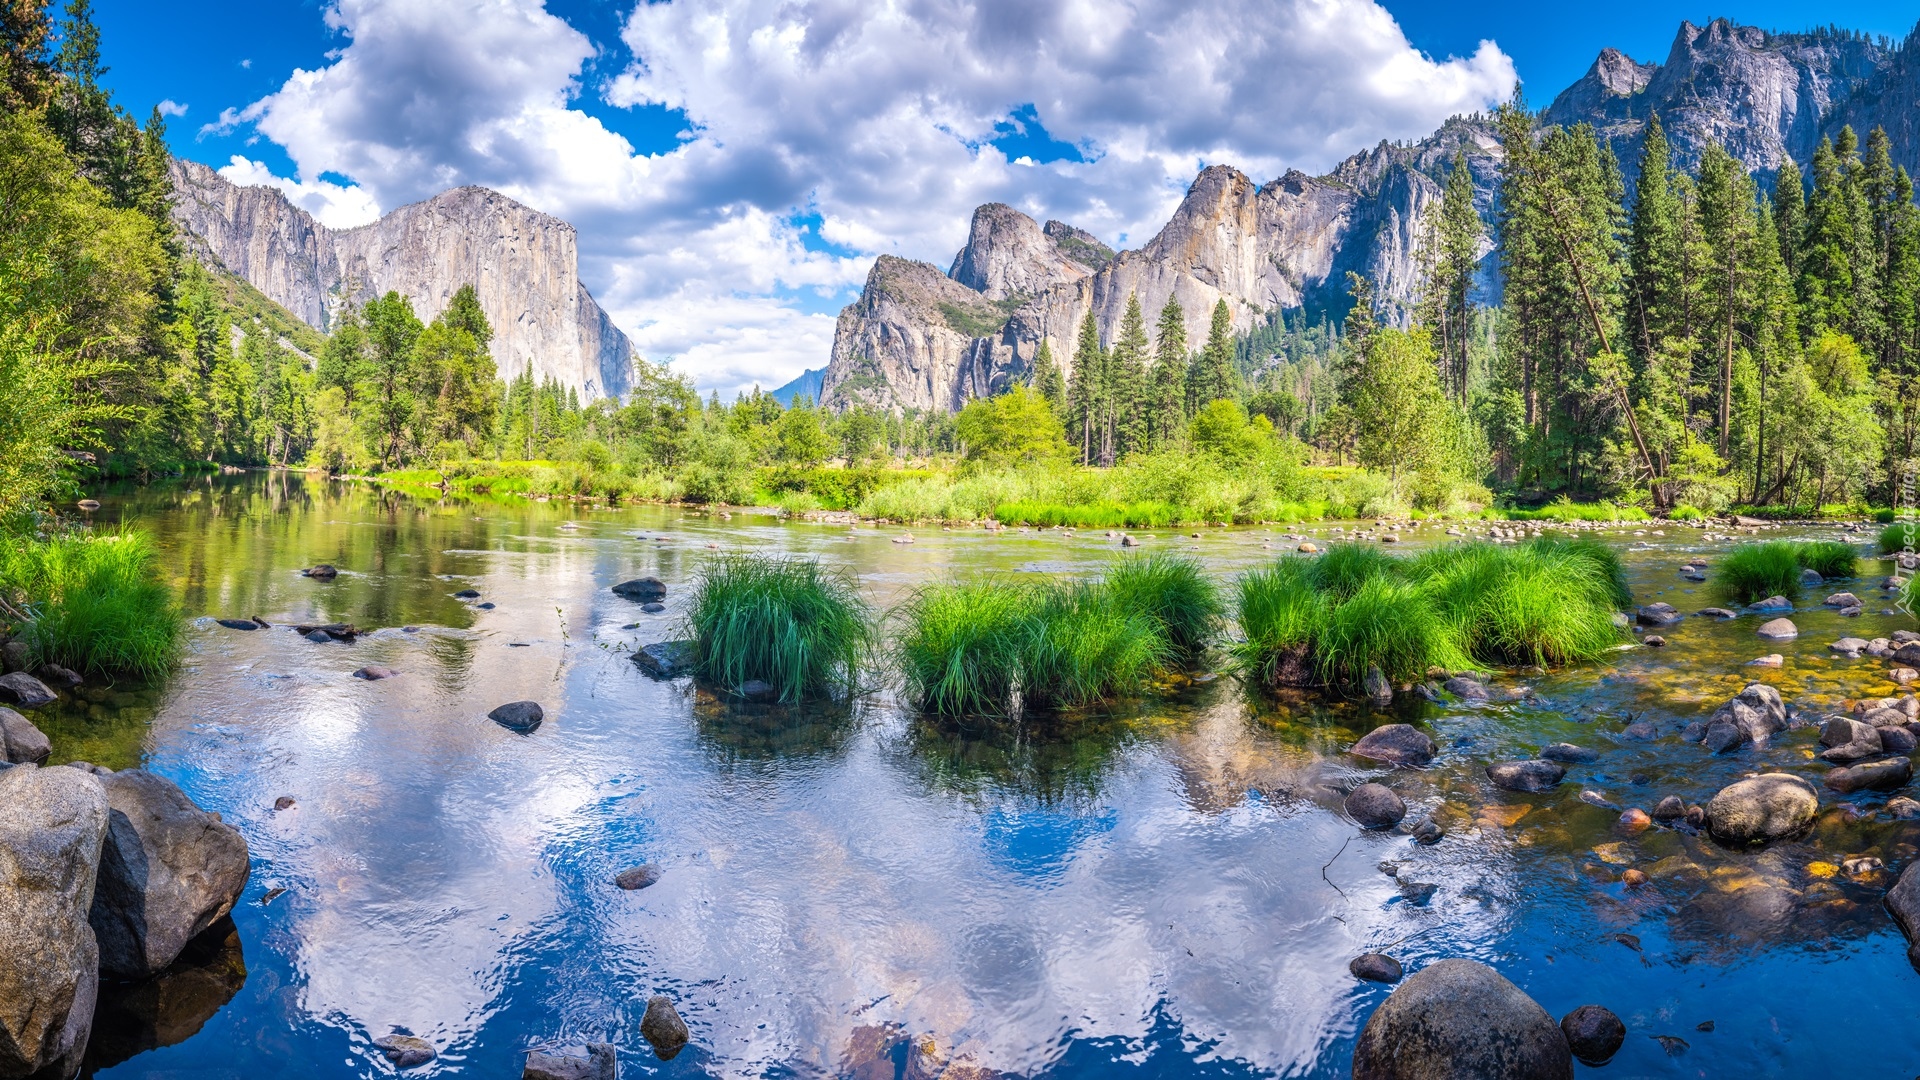 Stany Zjednoczone, Stan Kalifornia, Park Narodowy Yosemite, Zielona, Trawa, Rzeka Merced, Drzewa, Góry Sierra Nevada, Chmury